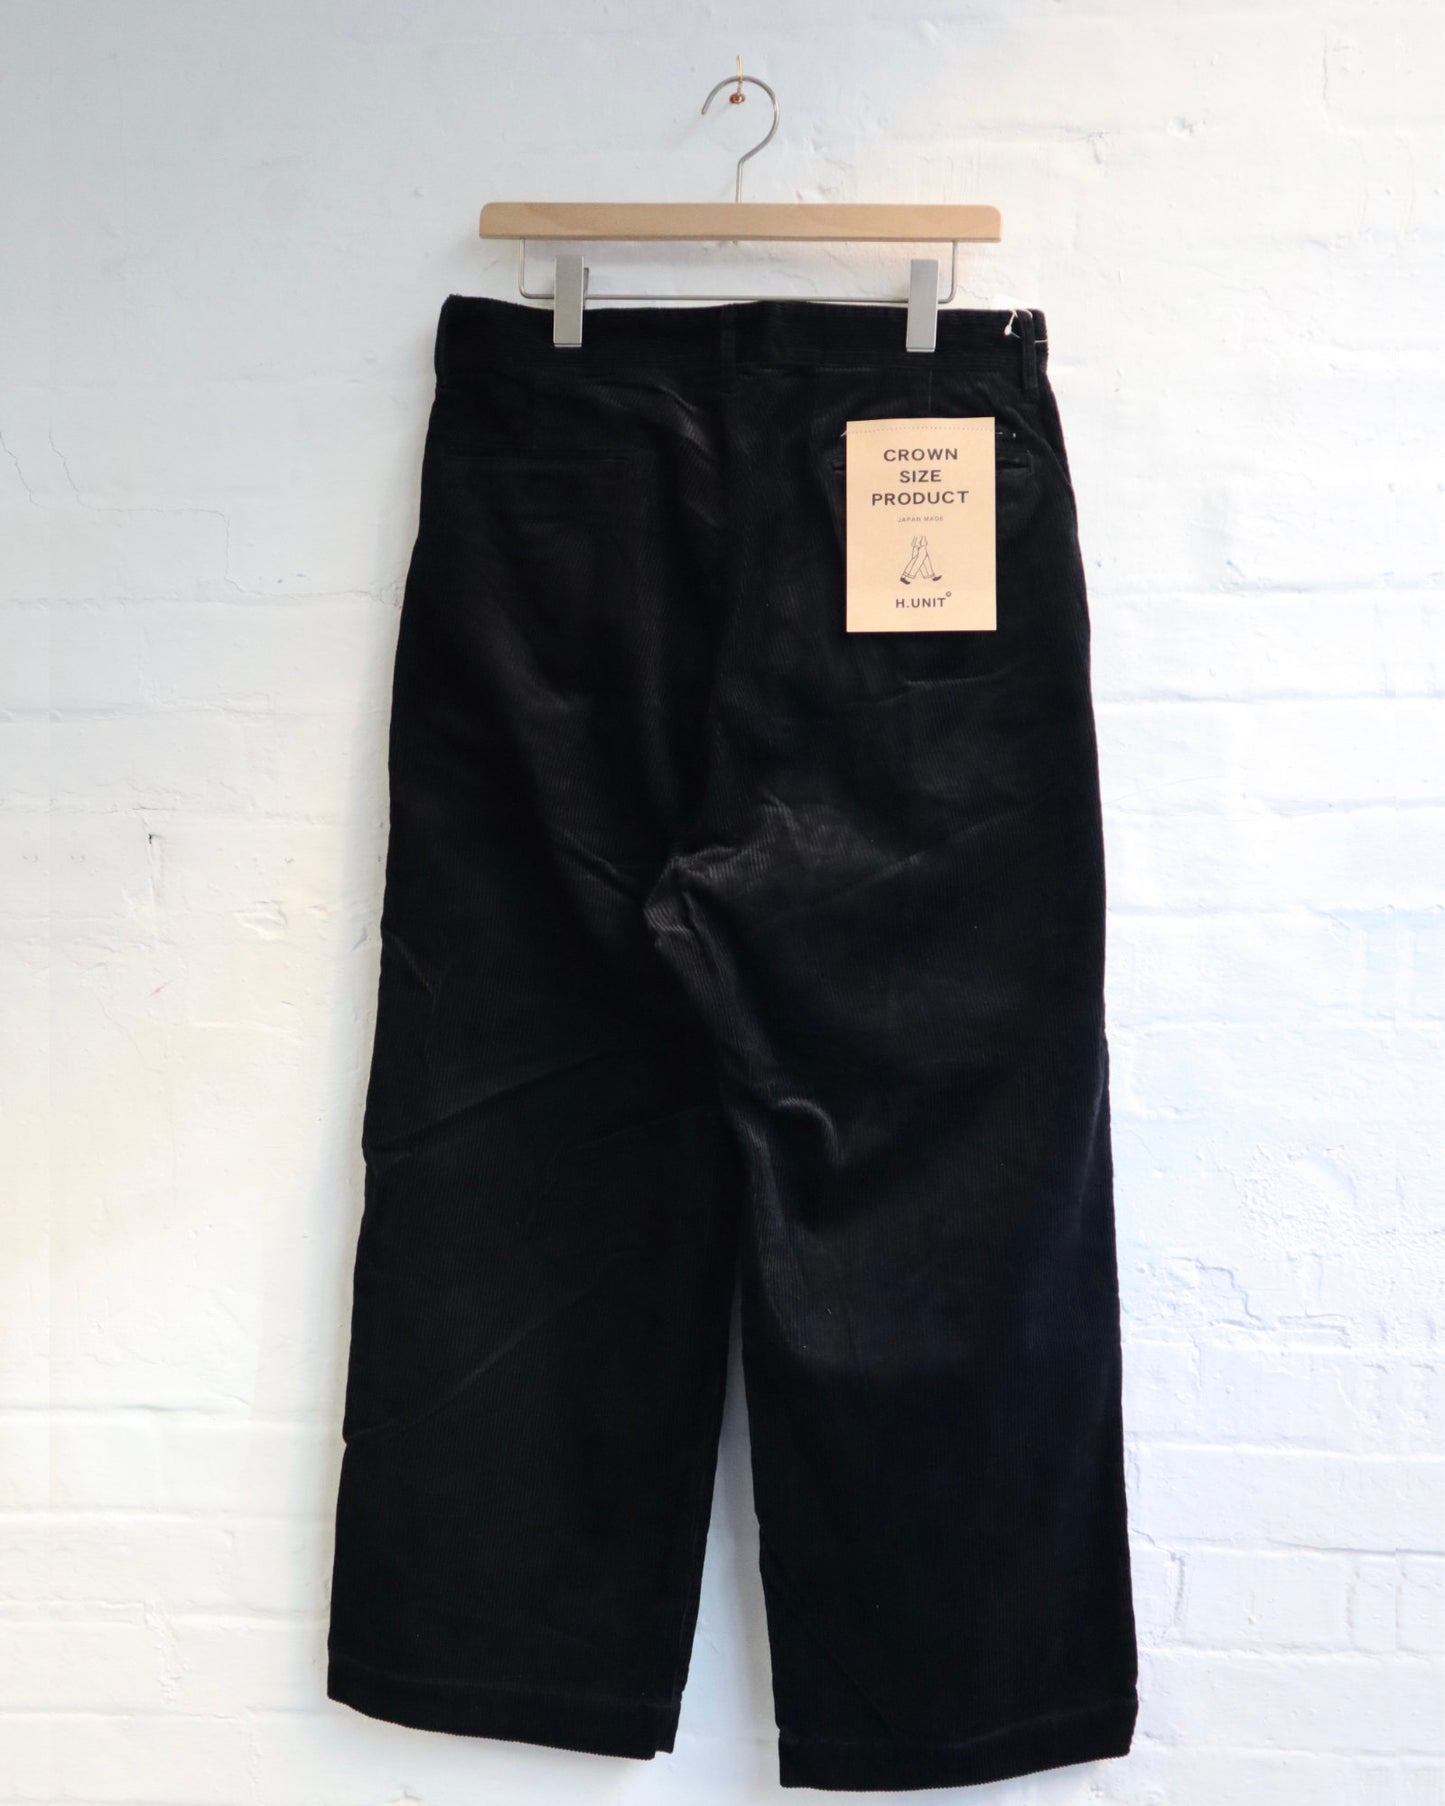 
                  
                    Corduroy crownsize trousers [H-PT027] - Black
                  
                